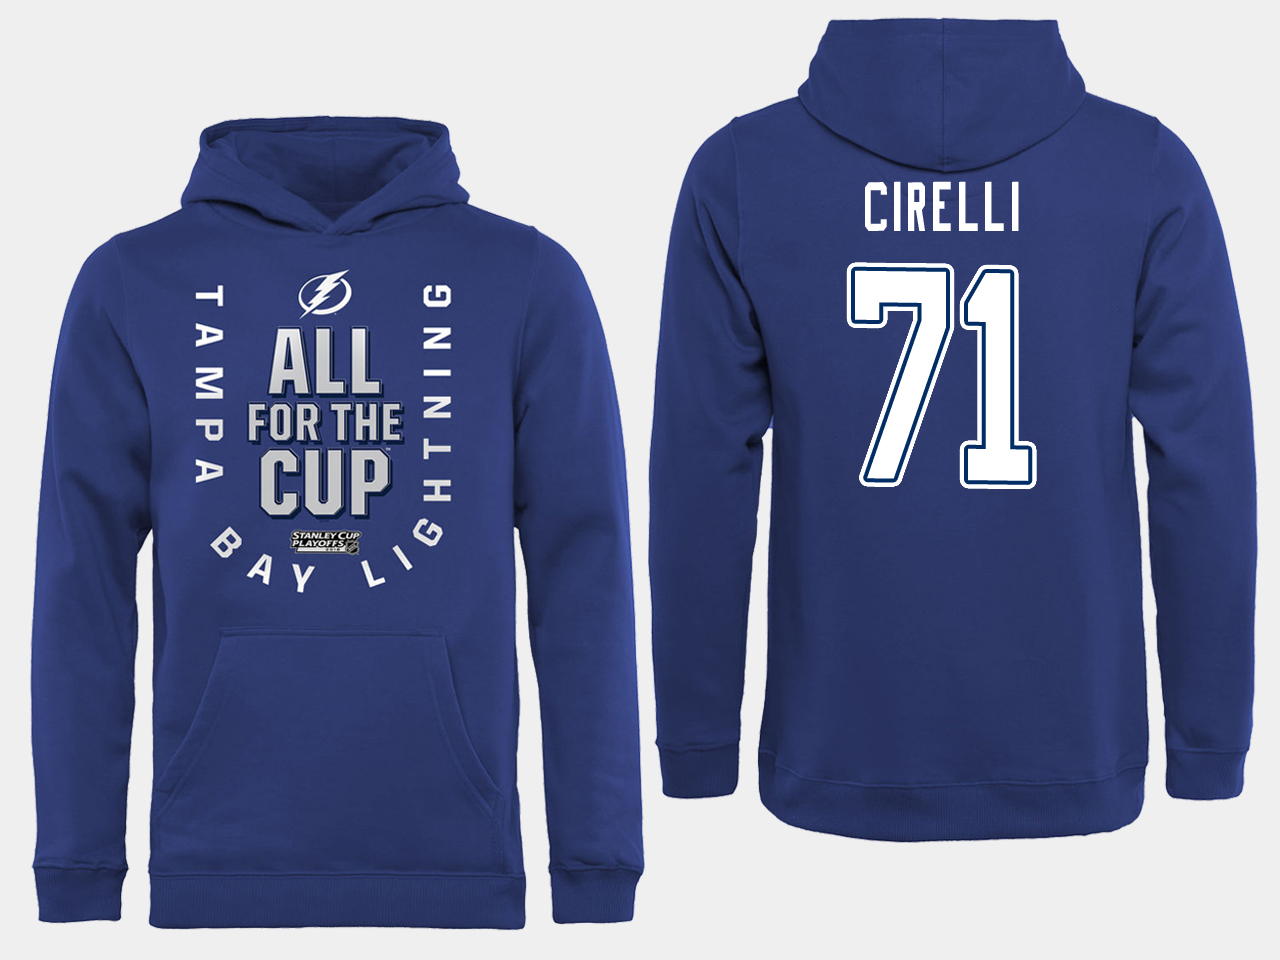 NHL Men adidas Tampa Bay Lightning #71 Cirelli blue All for the Cup Hoodie->tampa bay lightning->NHL Jersey